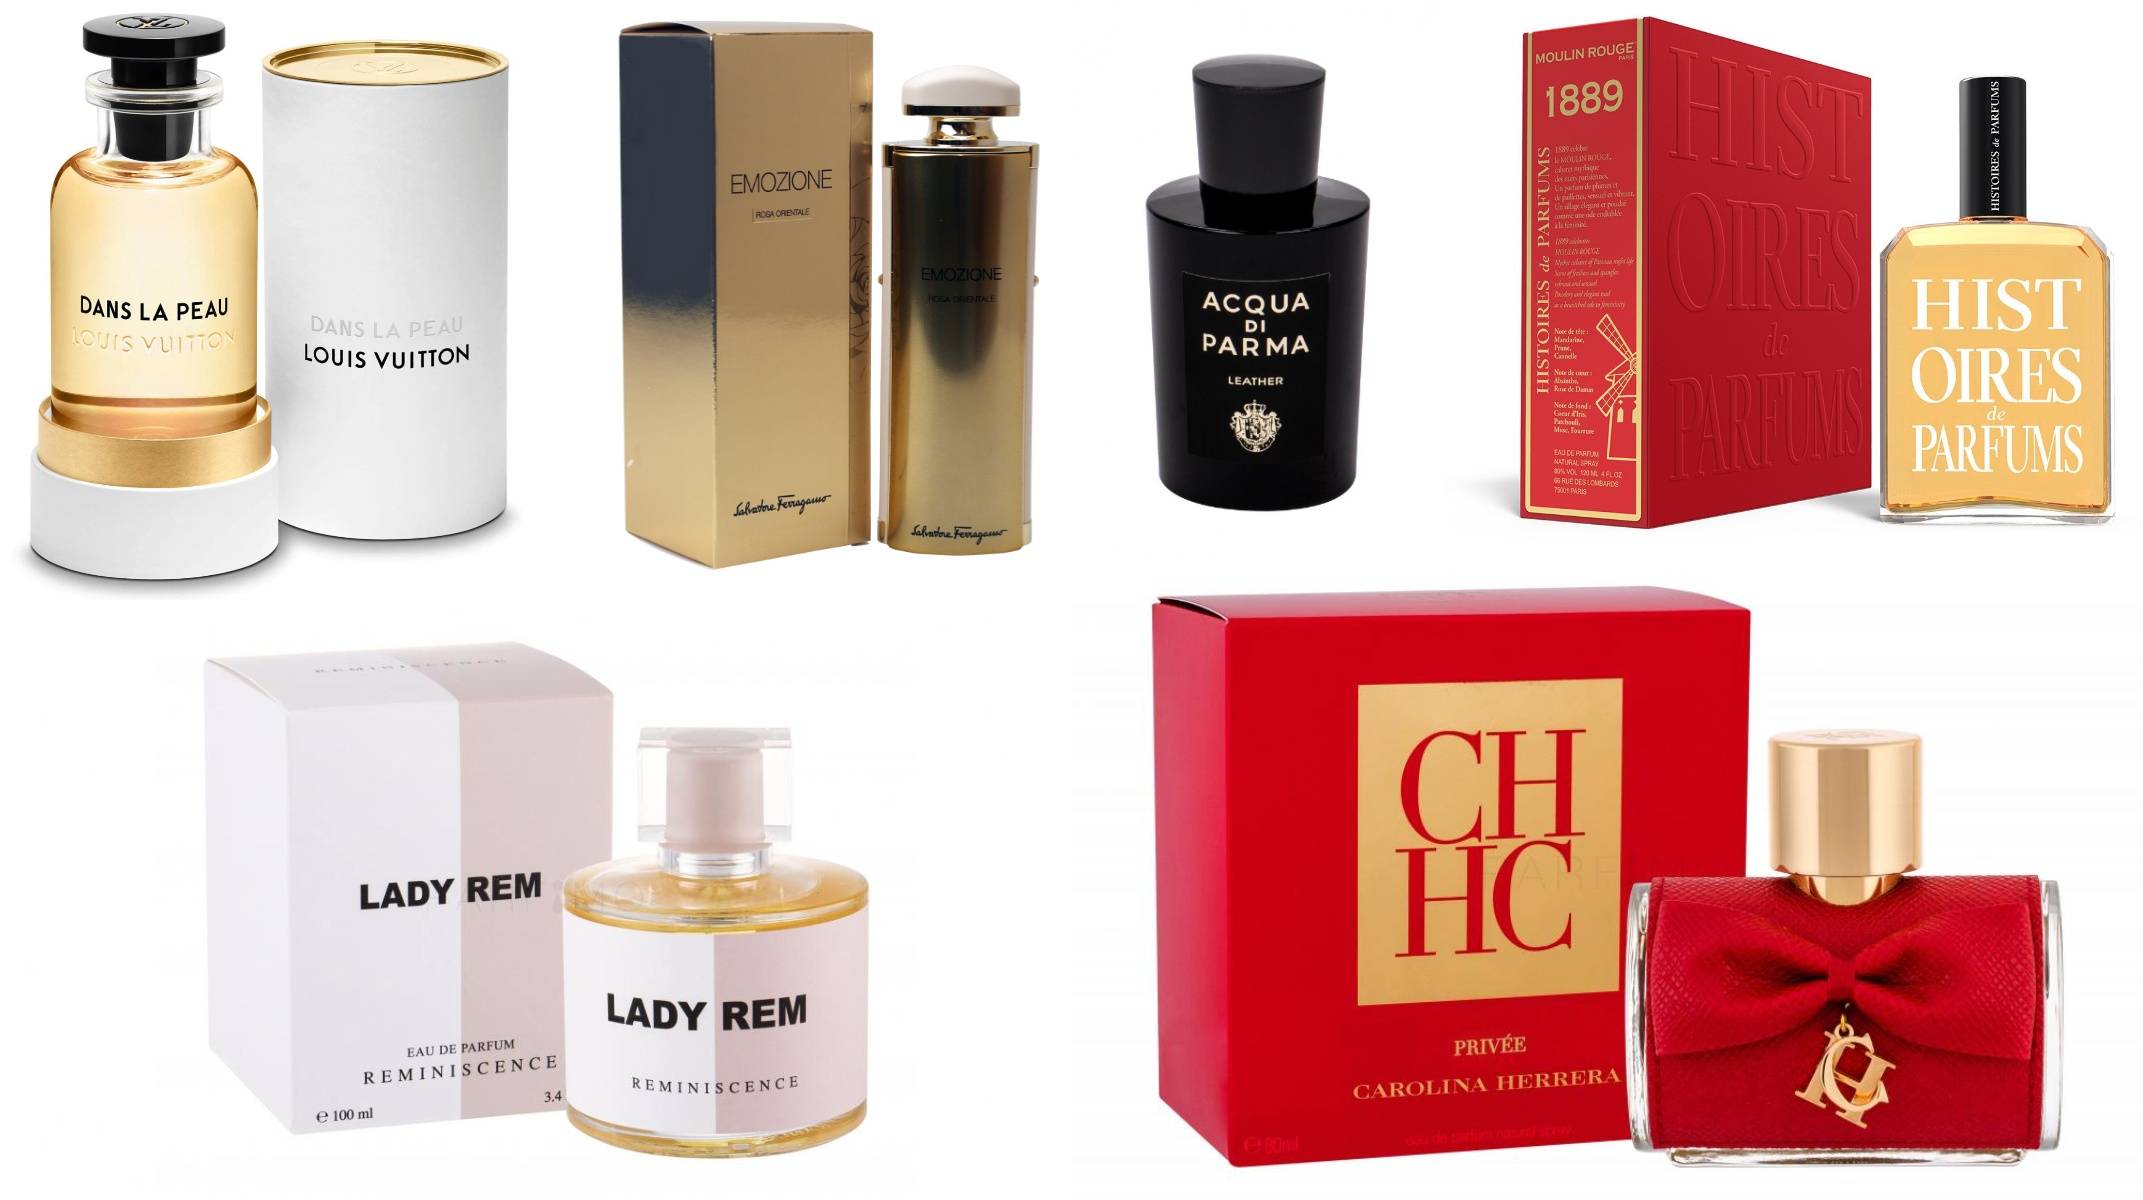 Cele mai apreciate parfumuri cu note de piele perfecte pentru doamne în 2022